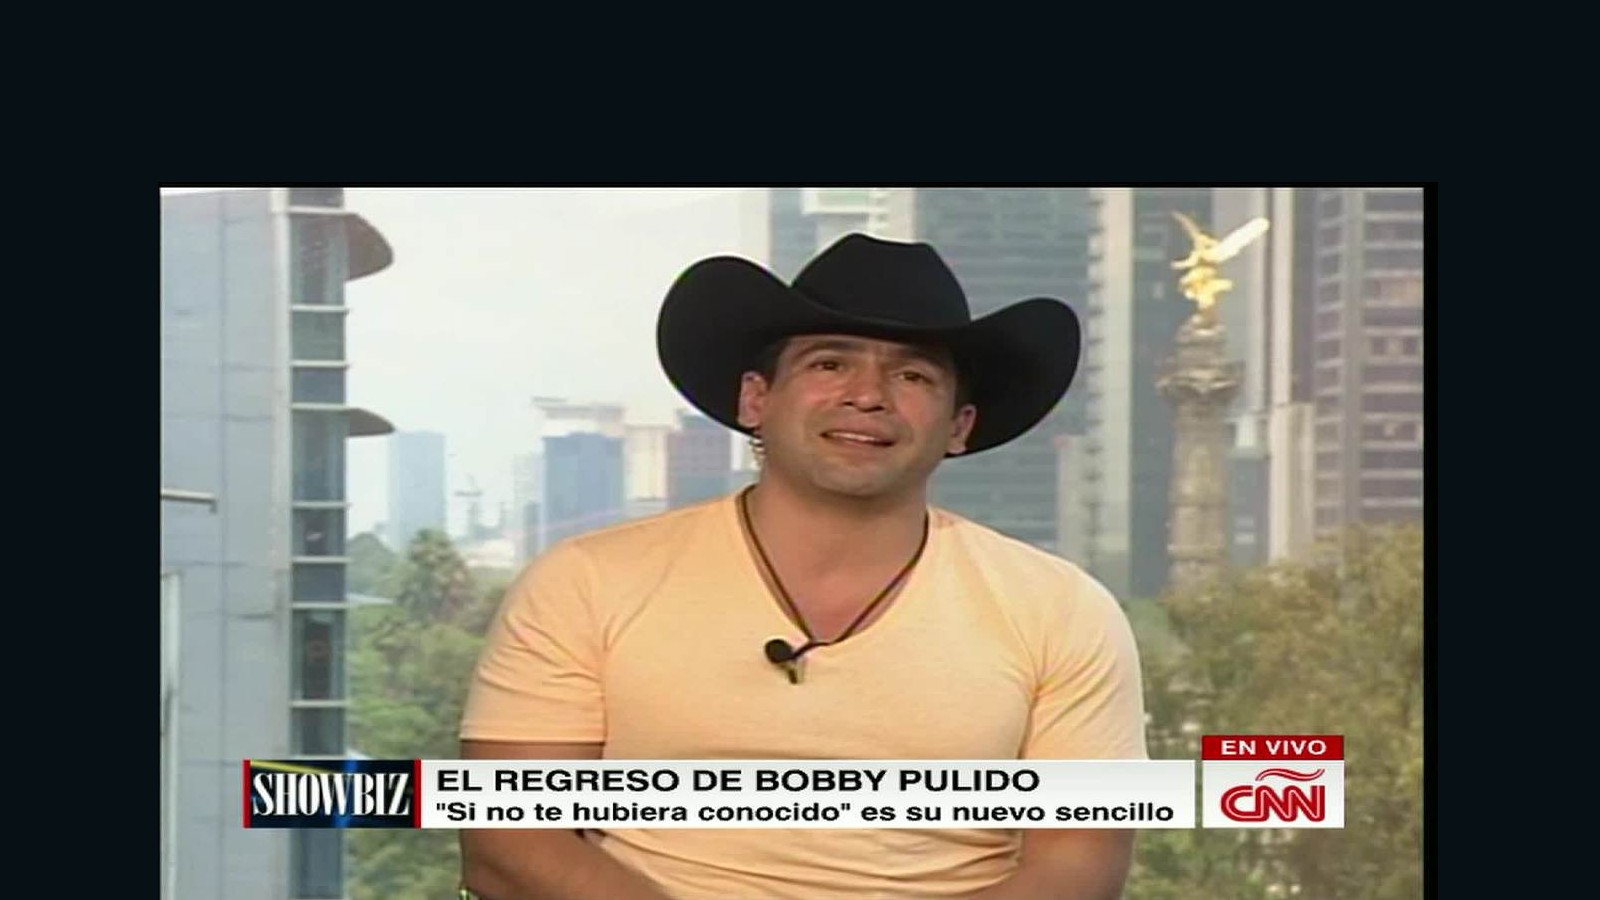 Bobby Pulido vuelve "recargado" CNN Video